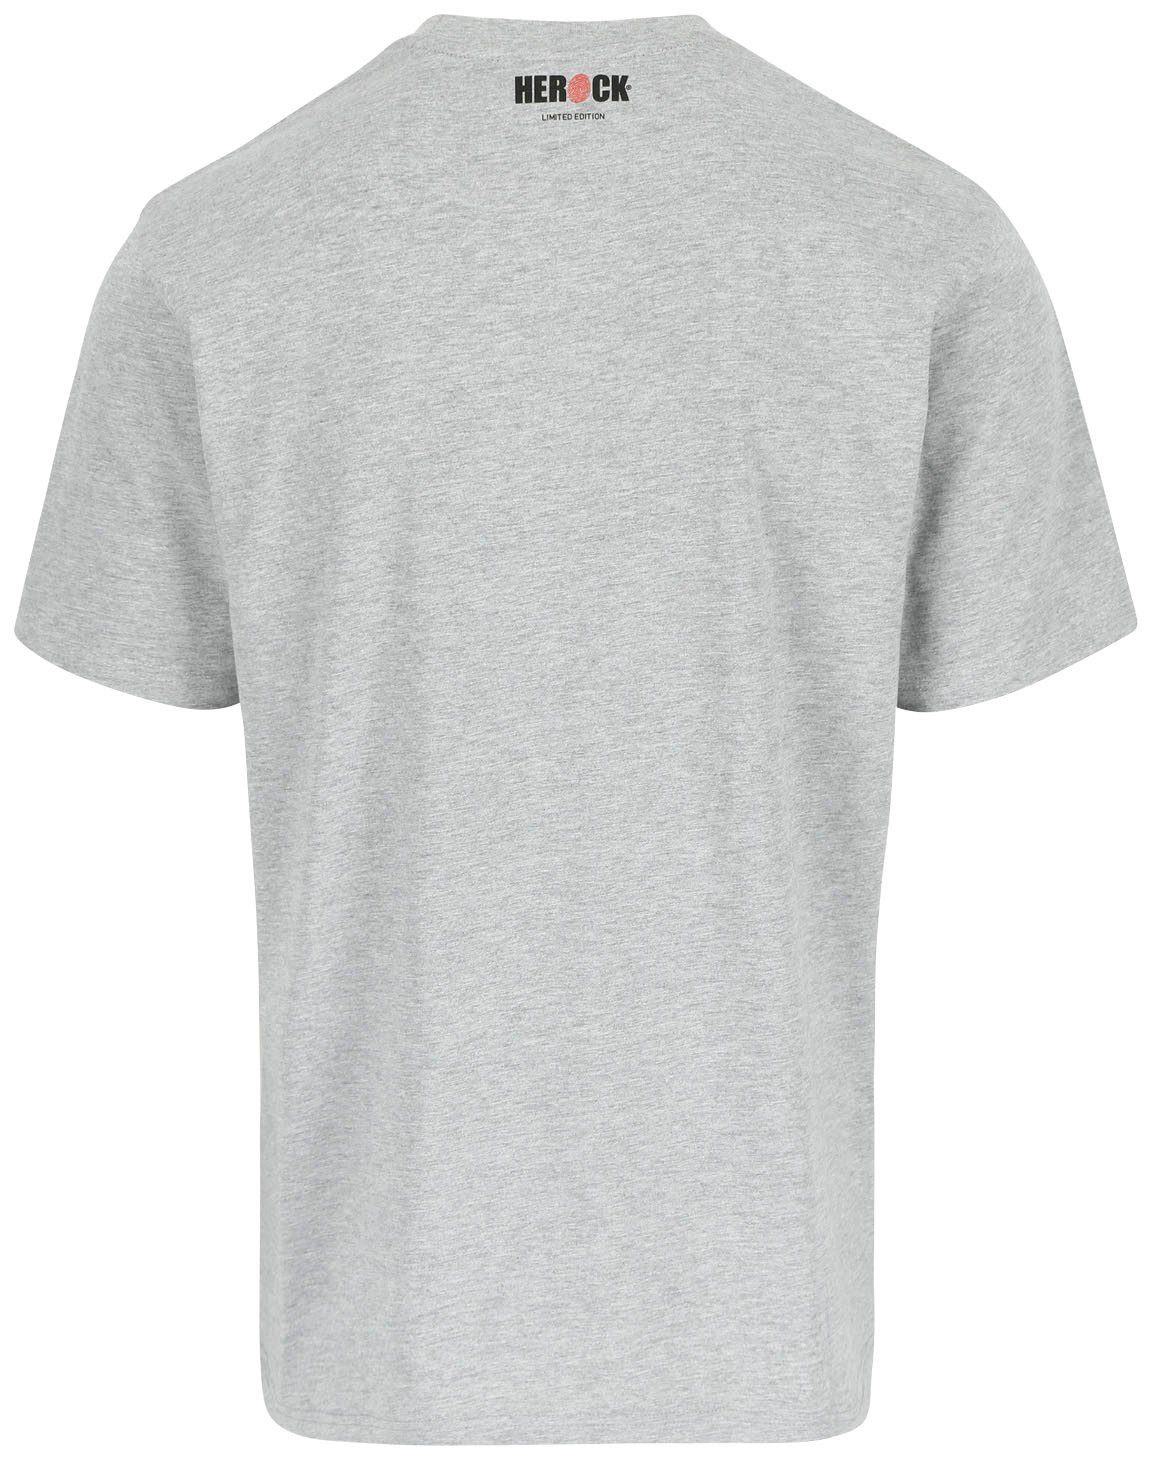 in hellgrau erhältlich Herock Limited Farben Worker Edition, T-Shirt verschiedene